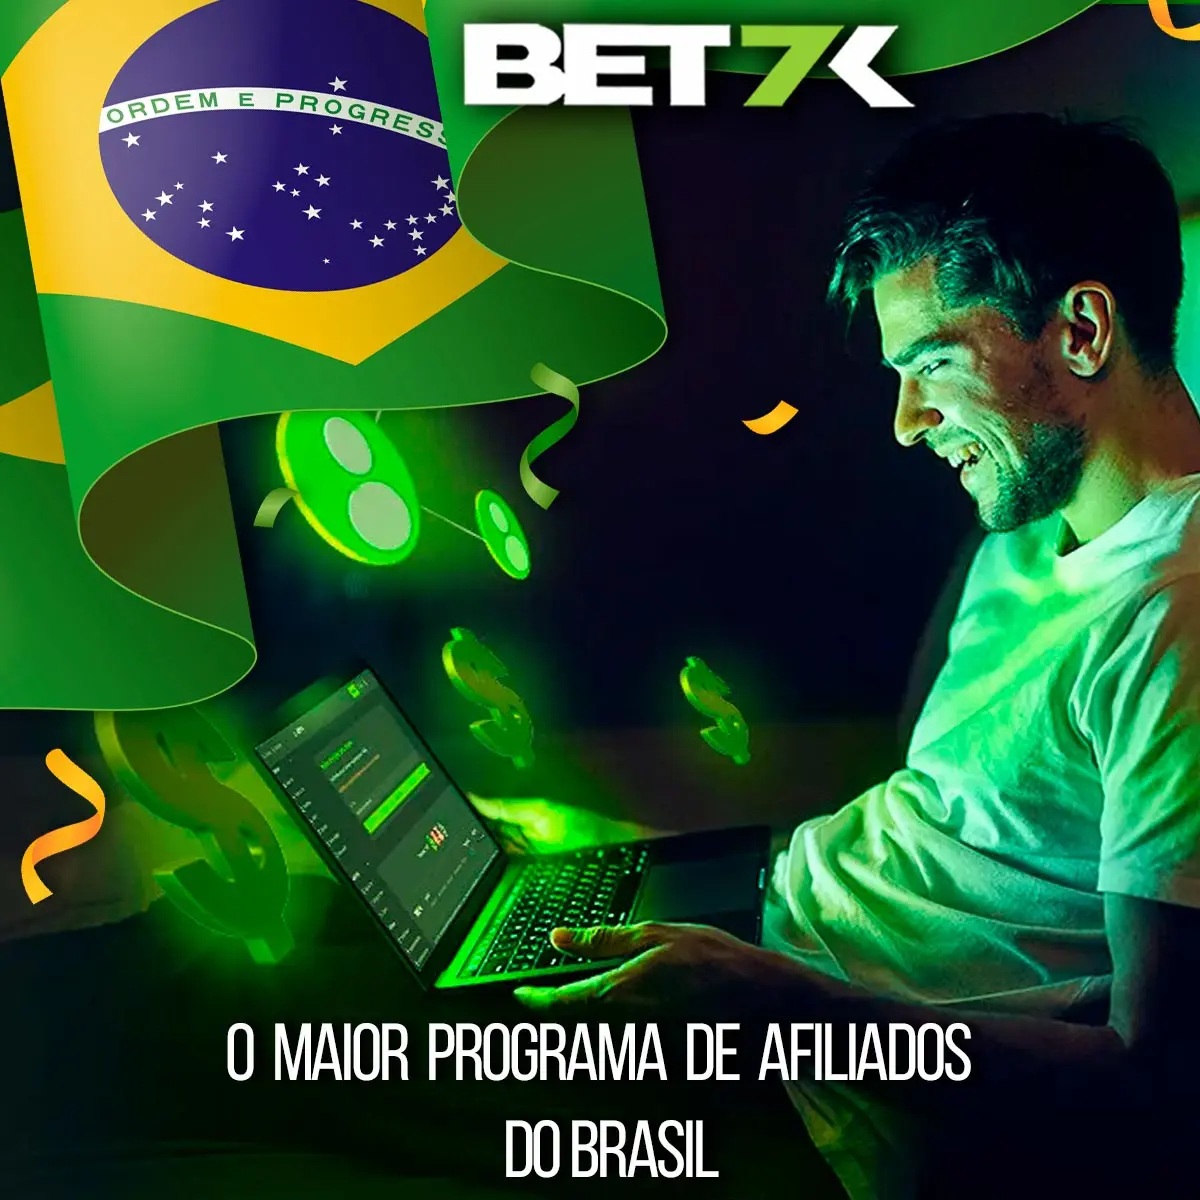 Cooperação bem-sucedida com a casa de apostas Bet7k no Brasil